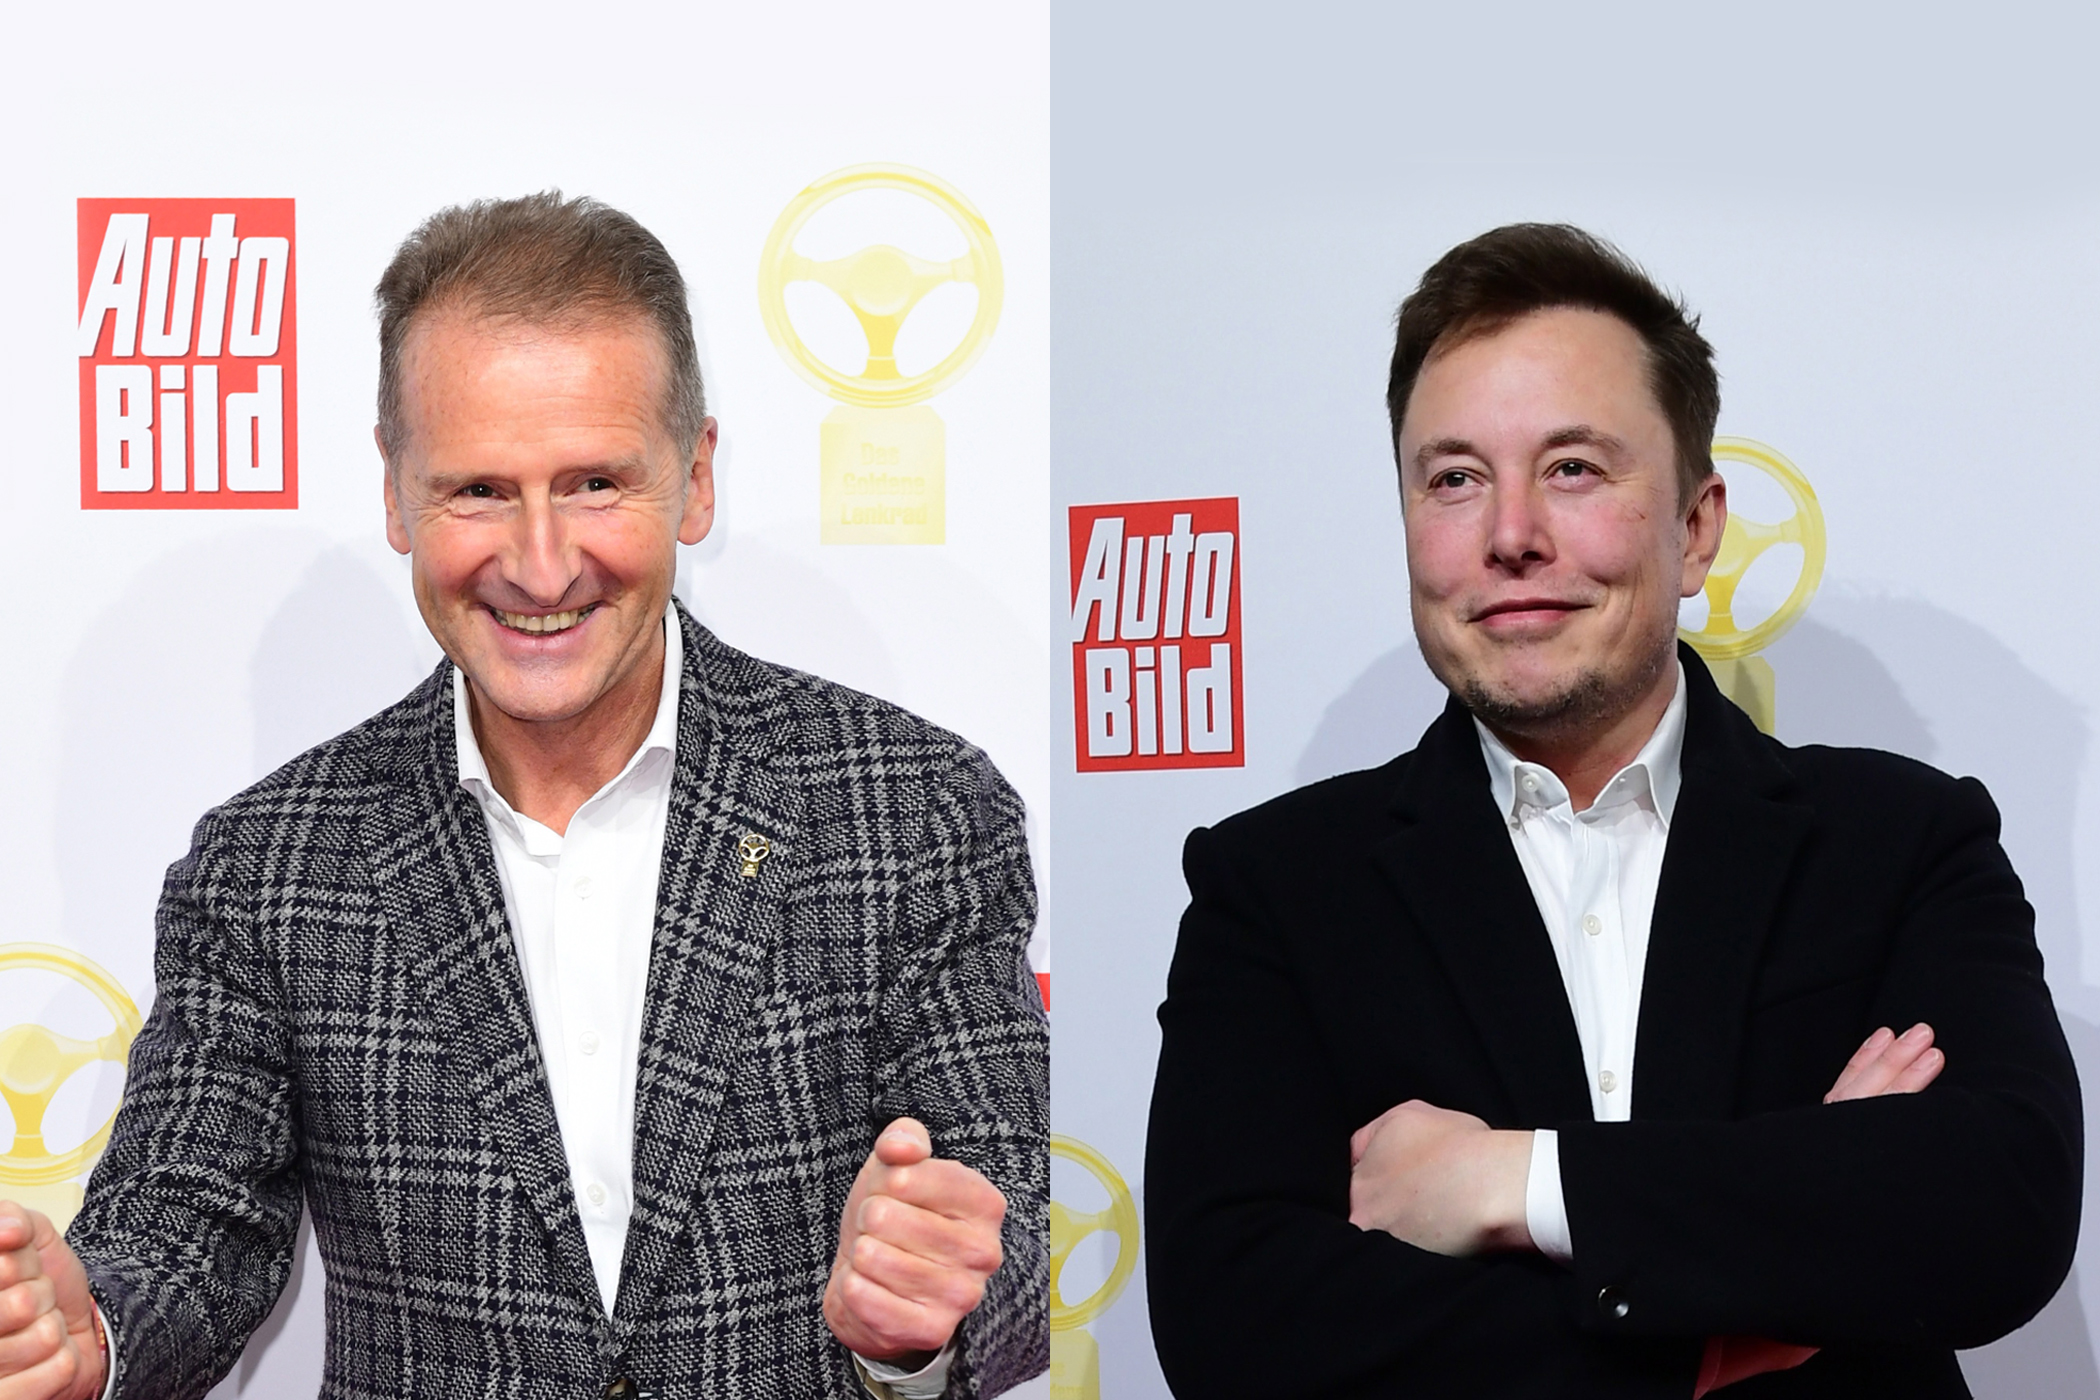 Volkswagen-topman Herbert Diess en Tesla-baas Elon Musk.